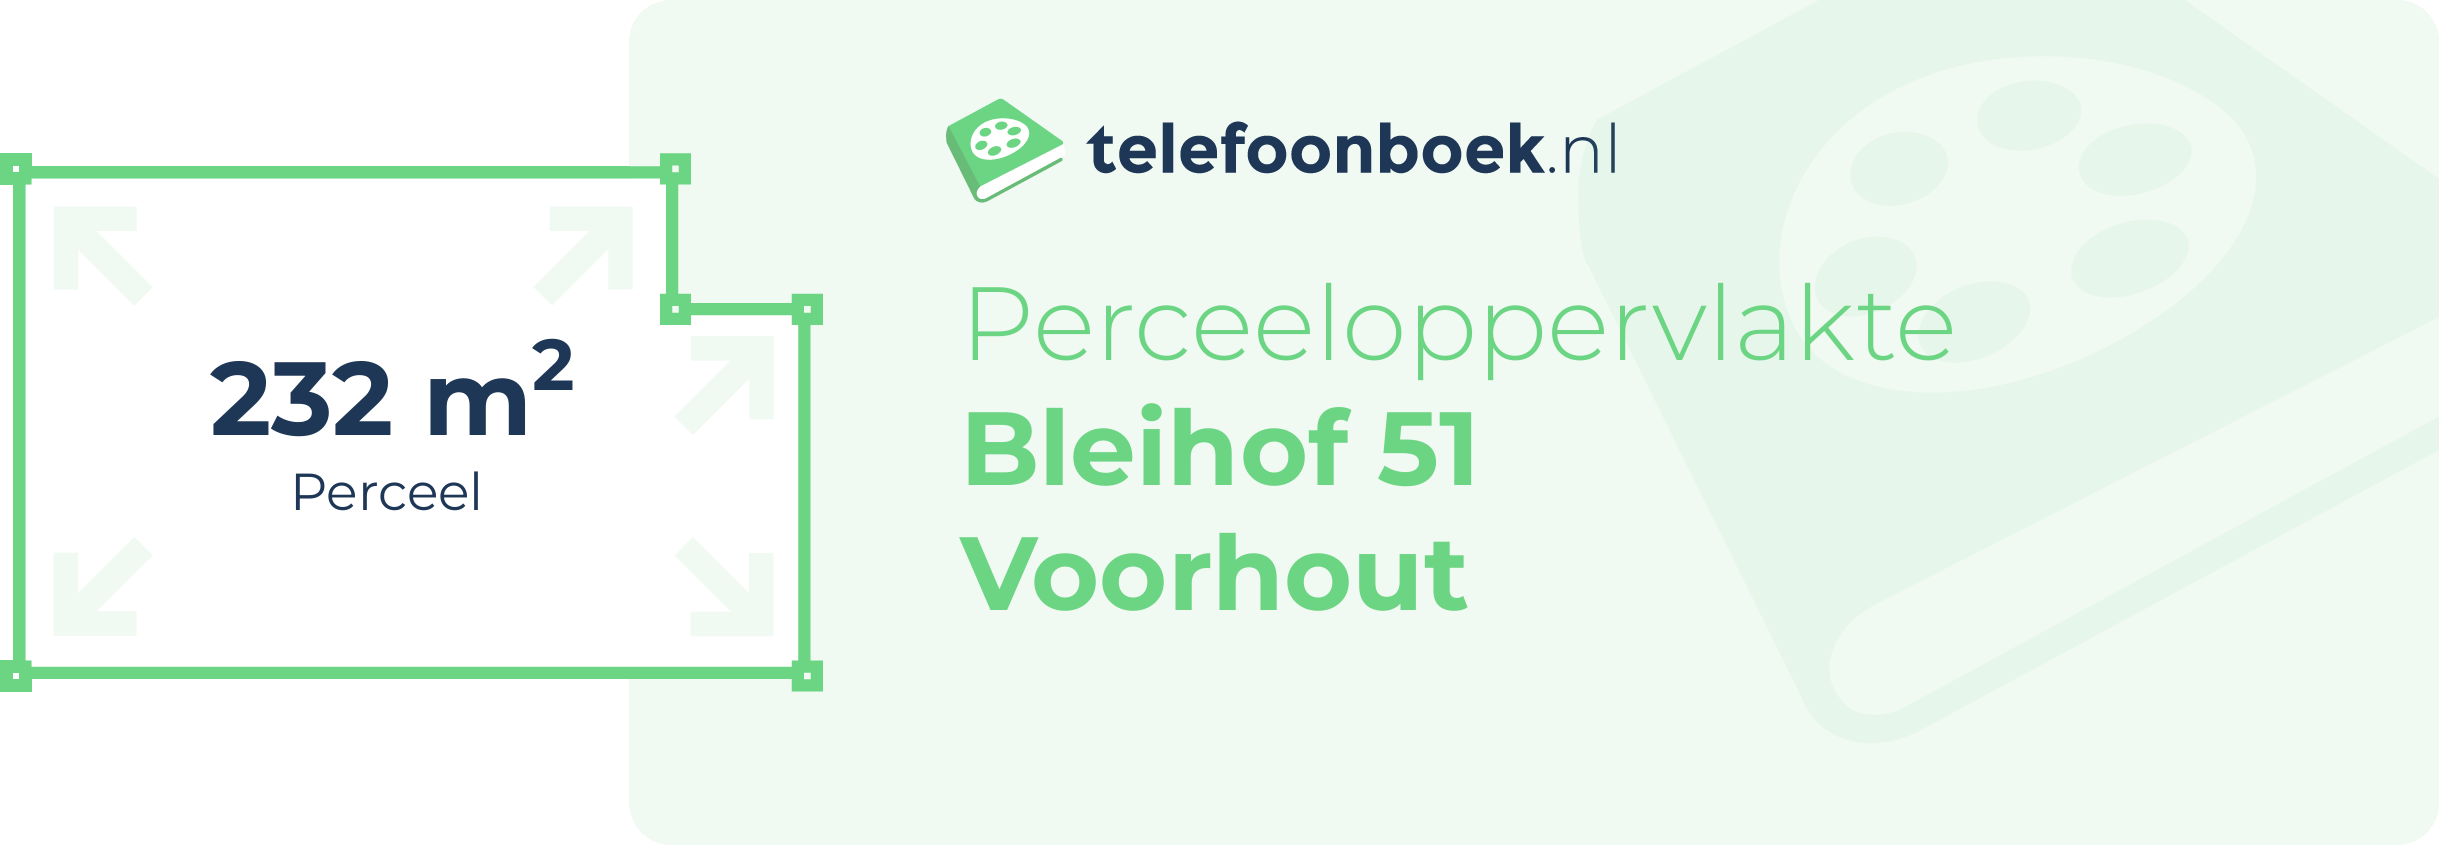 Perceeloppervlakte Bleihof 51 Voorhout